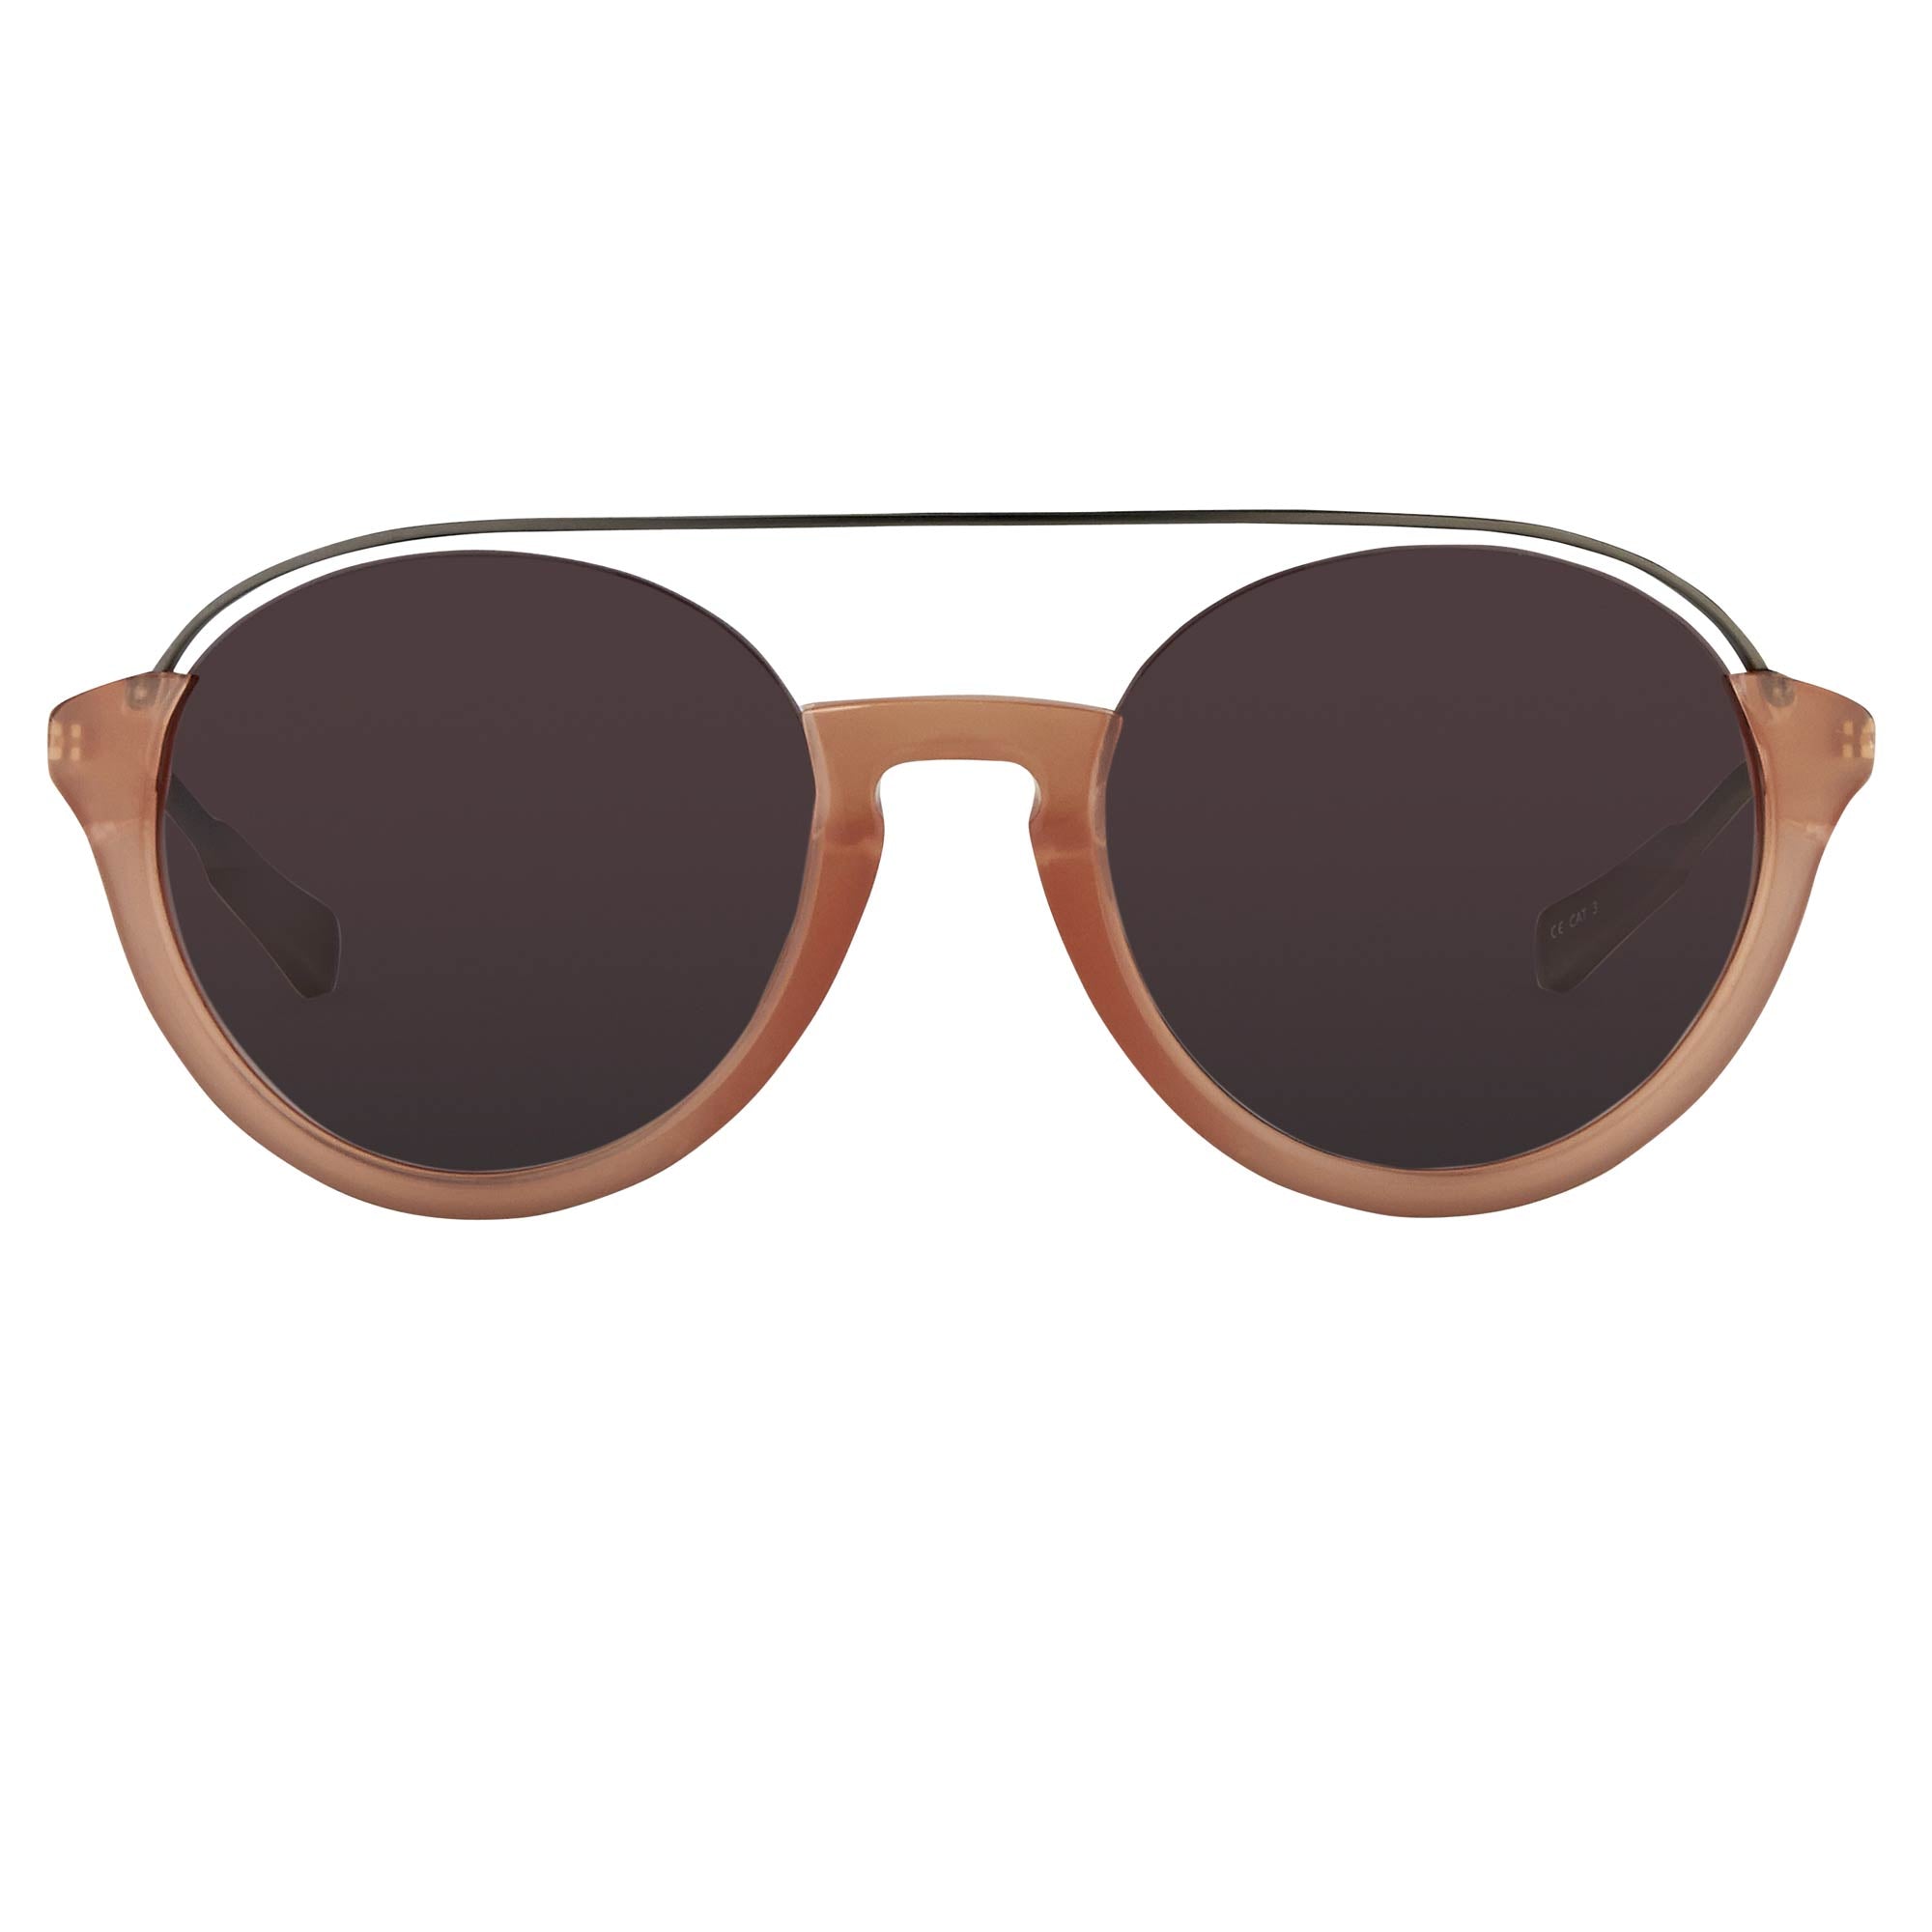 Sunglasses Kris Van Assche Grey in Plastic - 38312529